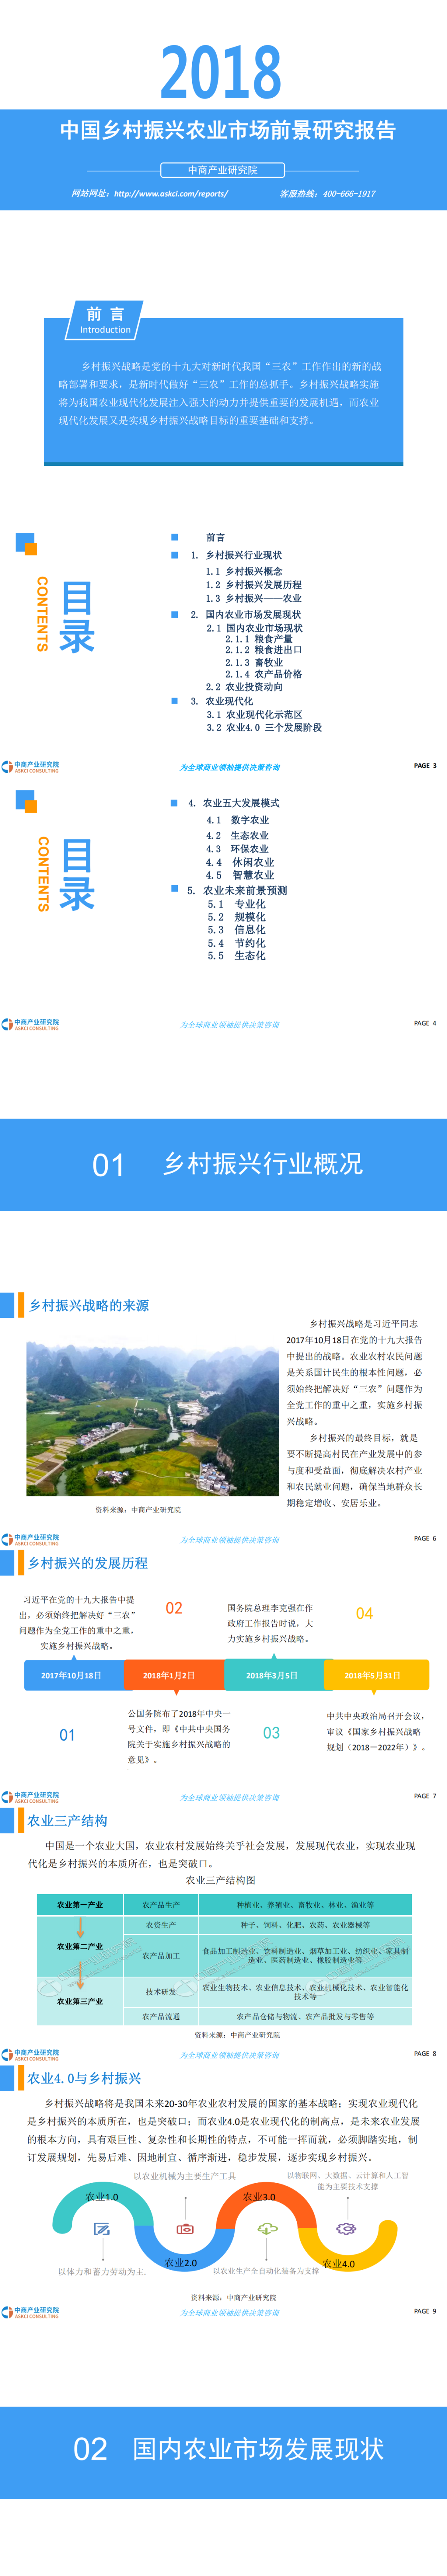 2018年中国乡村振兴农业市场前景研究报告_0.png